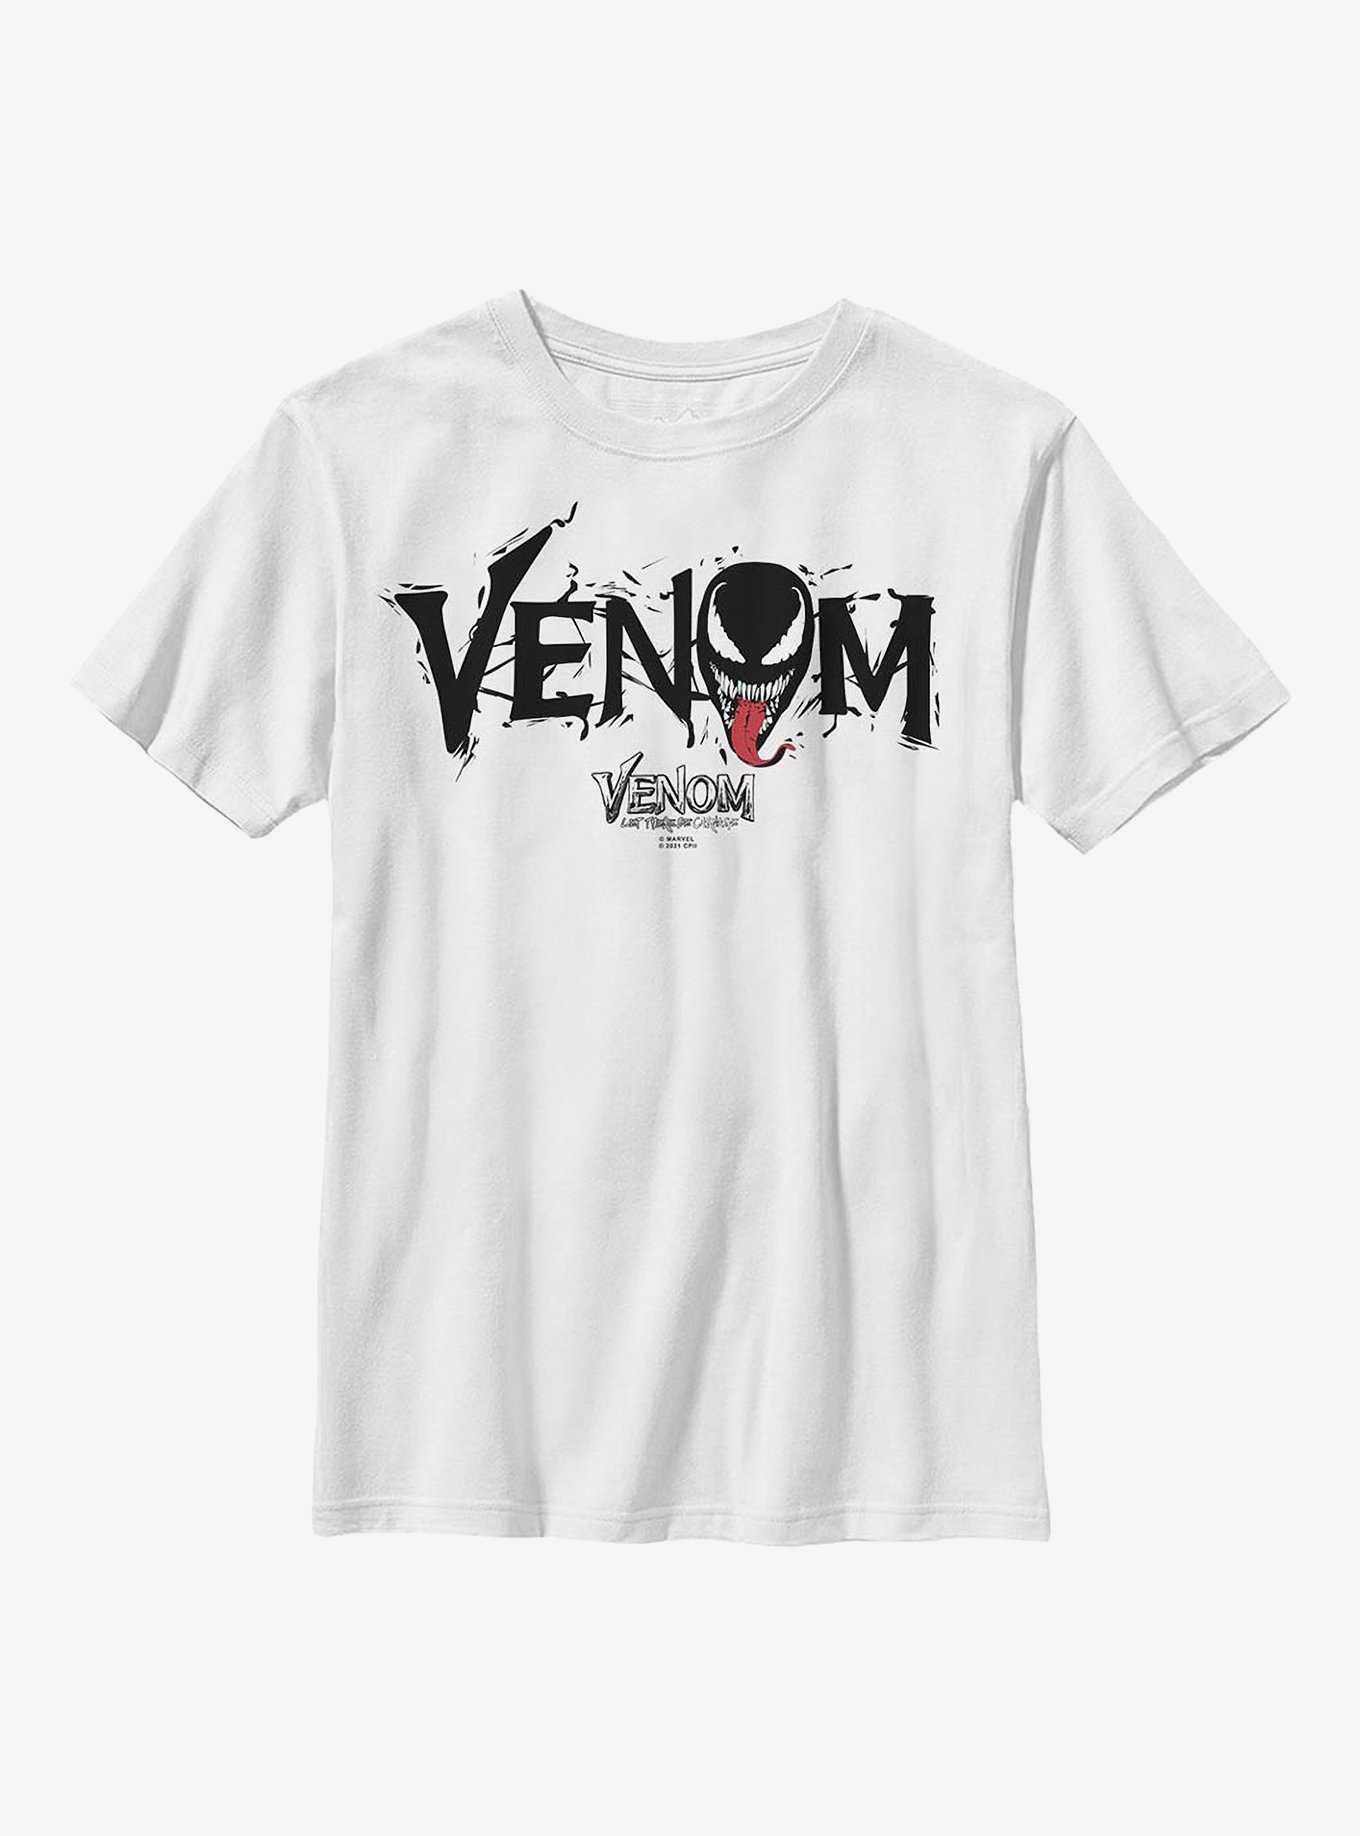 Marvel Venom: Let There Be Carnage Black Webs Youth T-Shirt, , hi-res